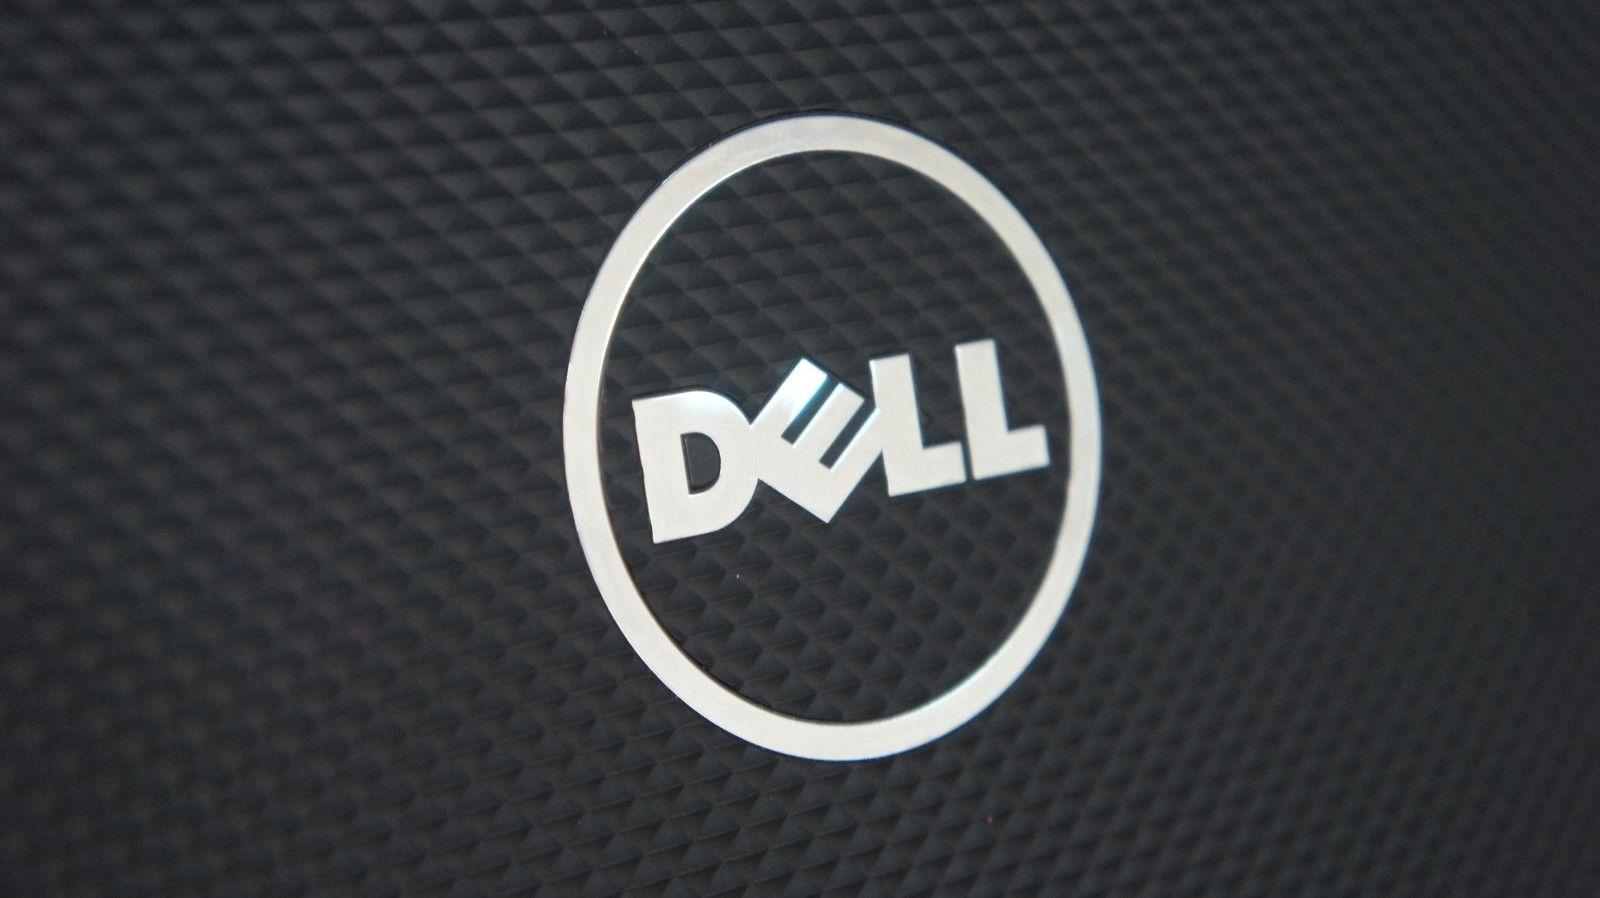 New Dell Logo - Dell to acquire EMC Corporation in massive $67 billion deal ...